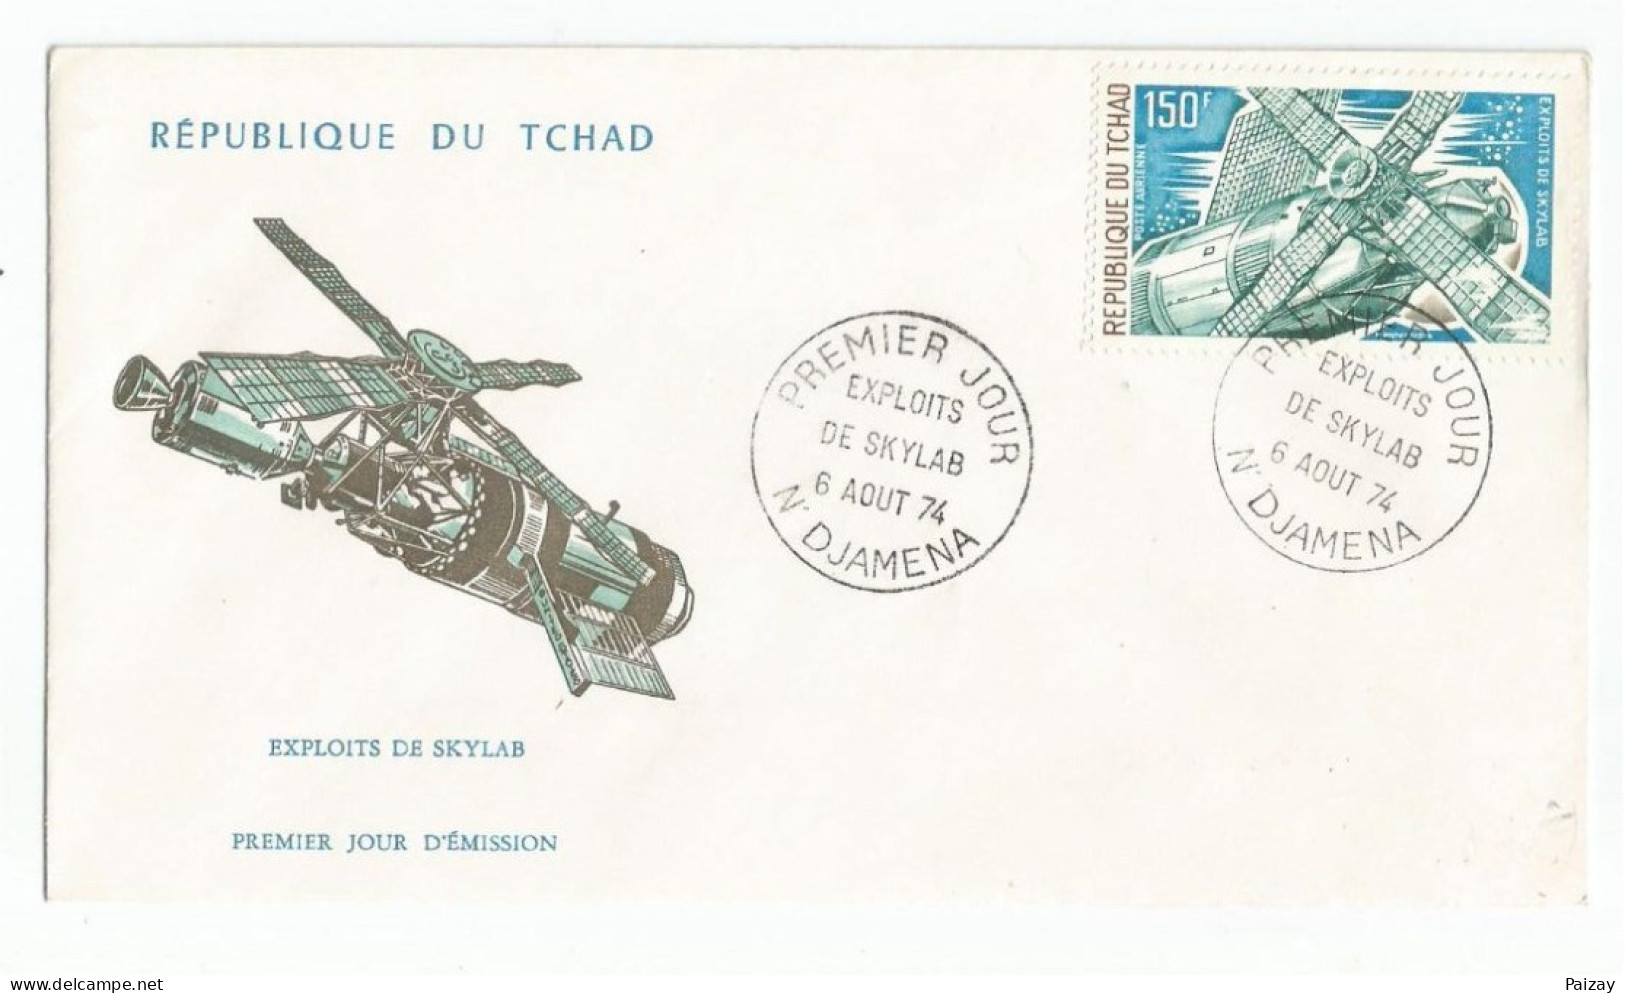 FDC République Tchad 6 Aout 1974 Poste Aérienne Exploits De Skylab Cachet N Djamena Afrique N° 146 Et 147 - Tschad (1960-...)